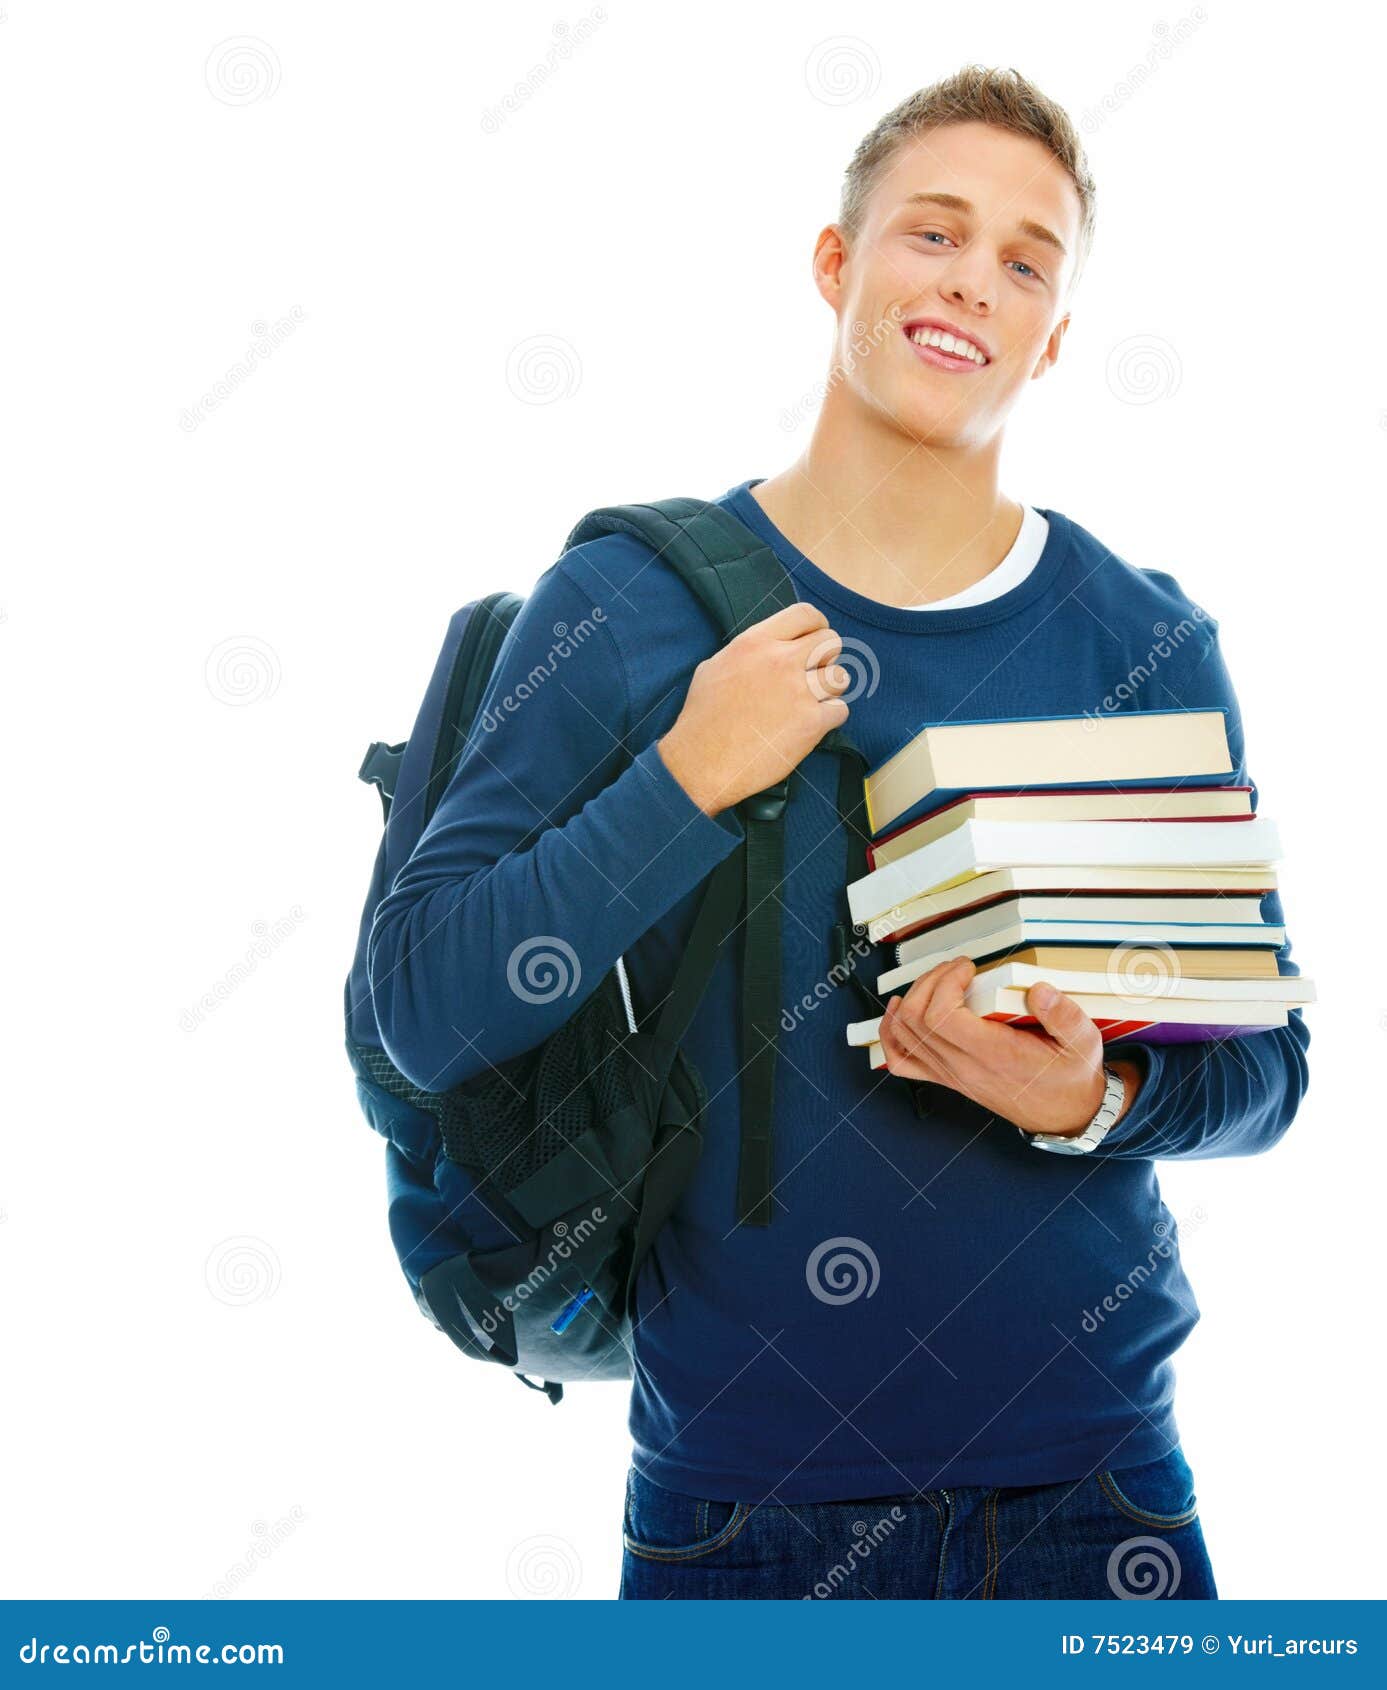 Студент в течение семестра. Книга человек. Человек студент. Парень студент. Студенты с книгами на белом фоне.